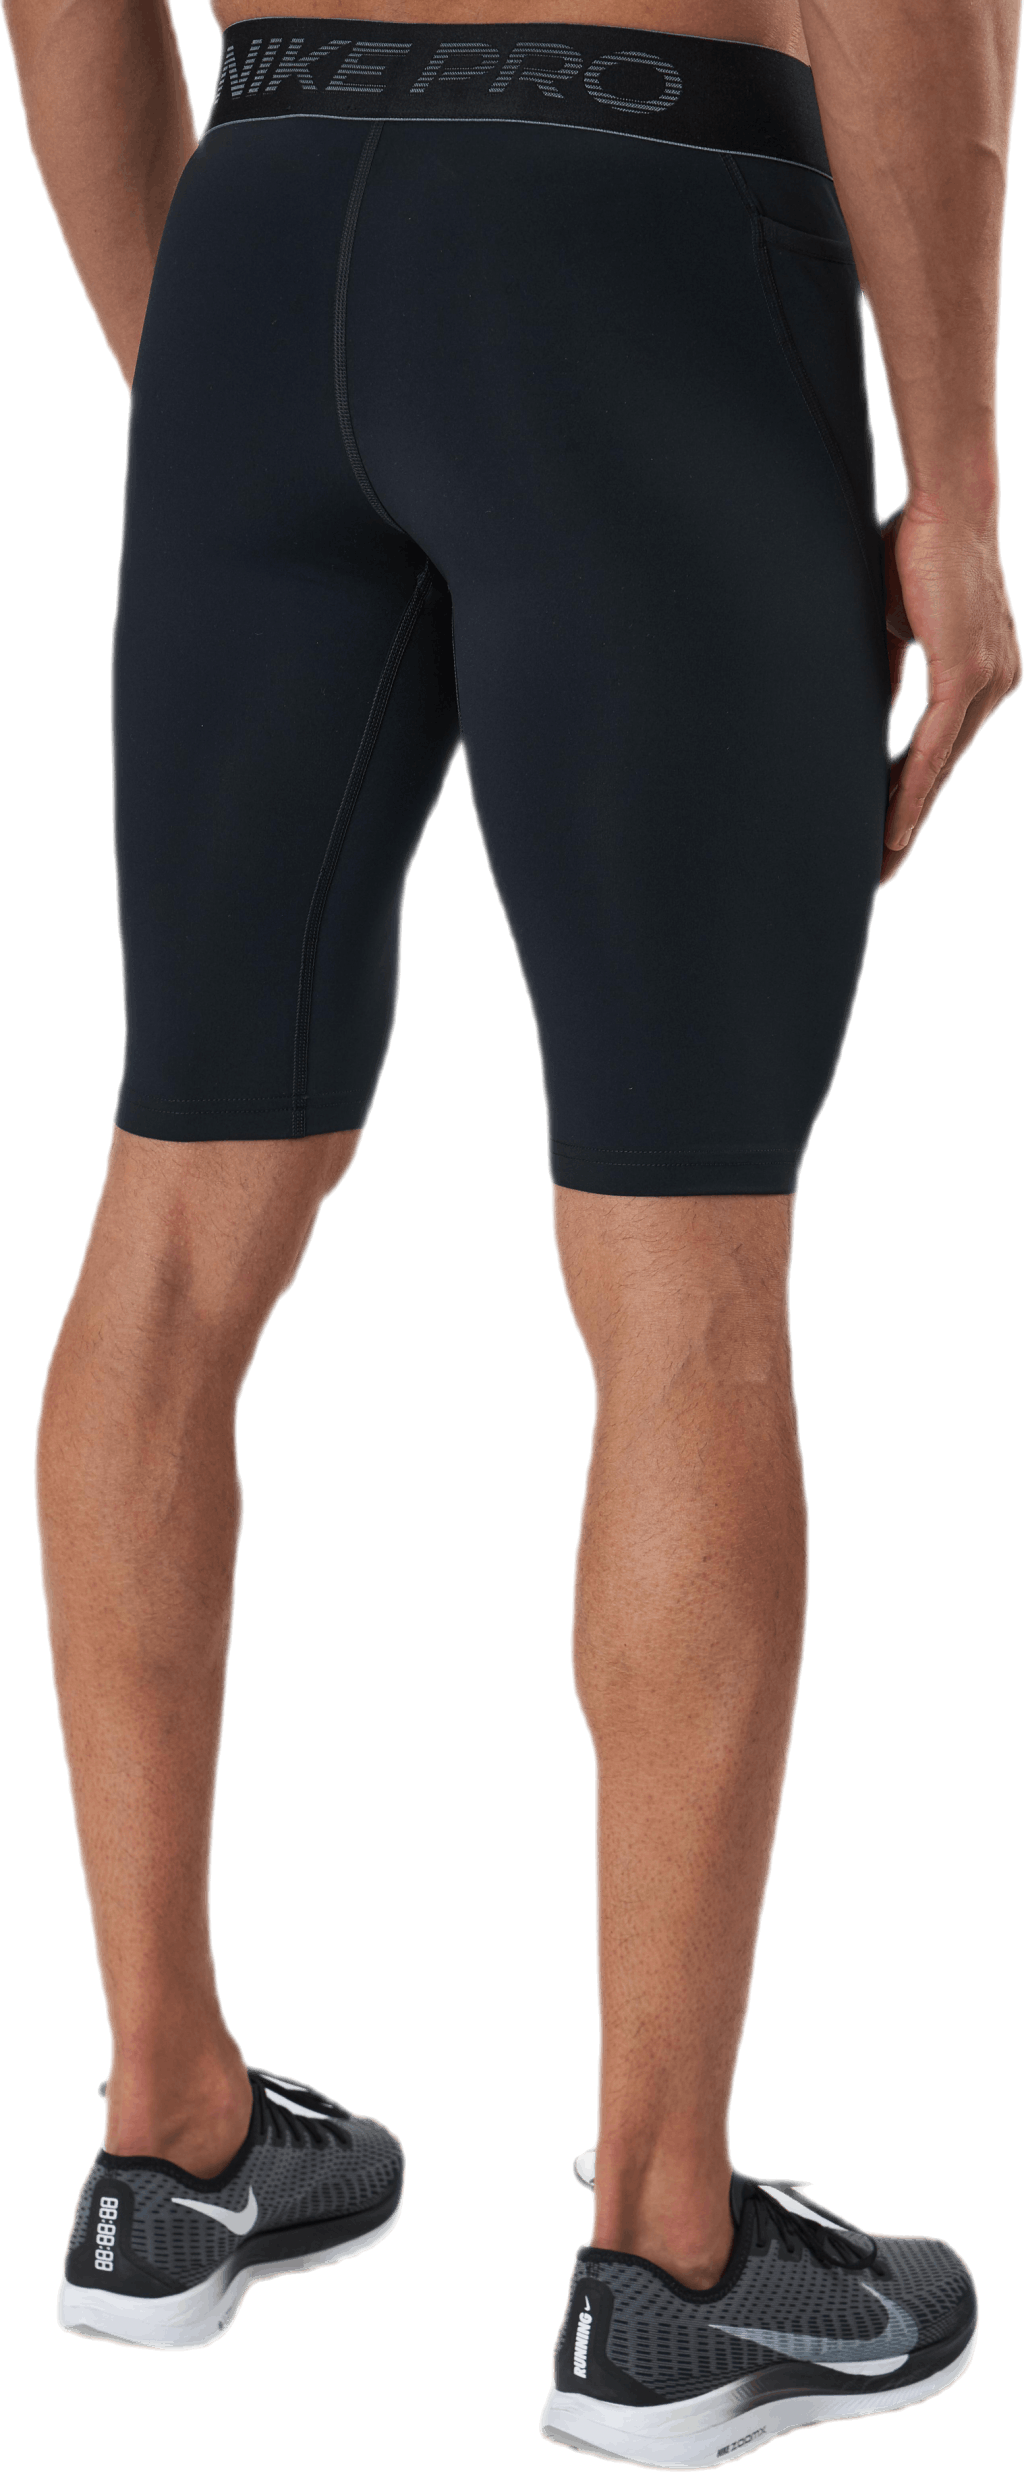 Nike Pro Base Layer Shorts Black/Grey